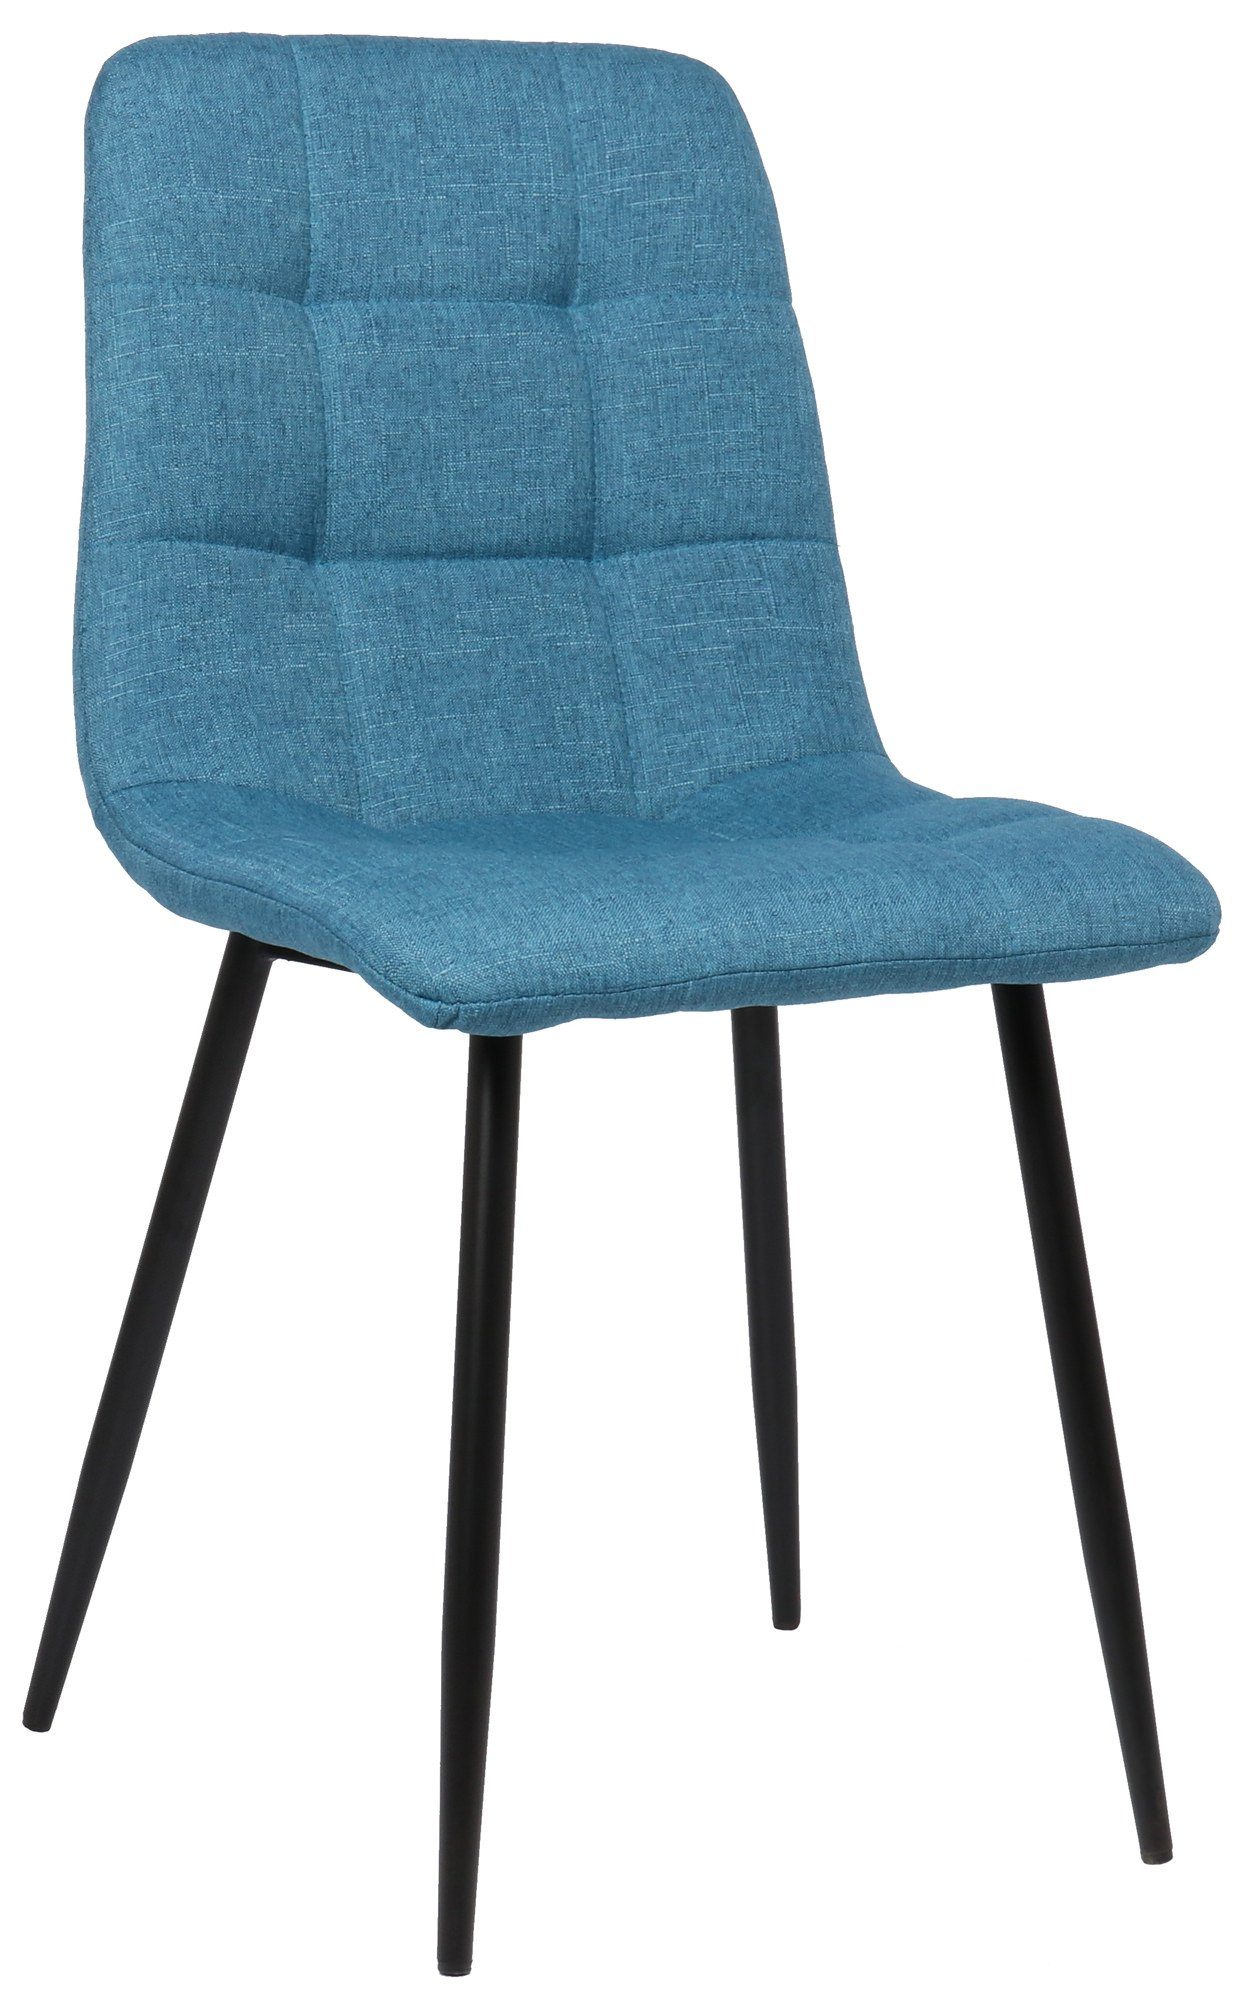 TPFLiving Esszimmerstuhl Till mit hochwertig gepolsterter Sitzfläche - Konferenzstuhl (Küchenstuhl - Esstischstuhl - Wohnzimmerstuhl - Polsterstuhl), Gestell: Metall schwarz - Sitzfläche: Stoff blau